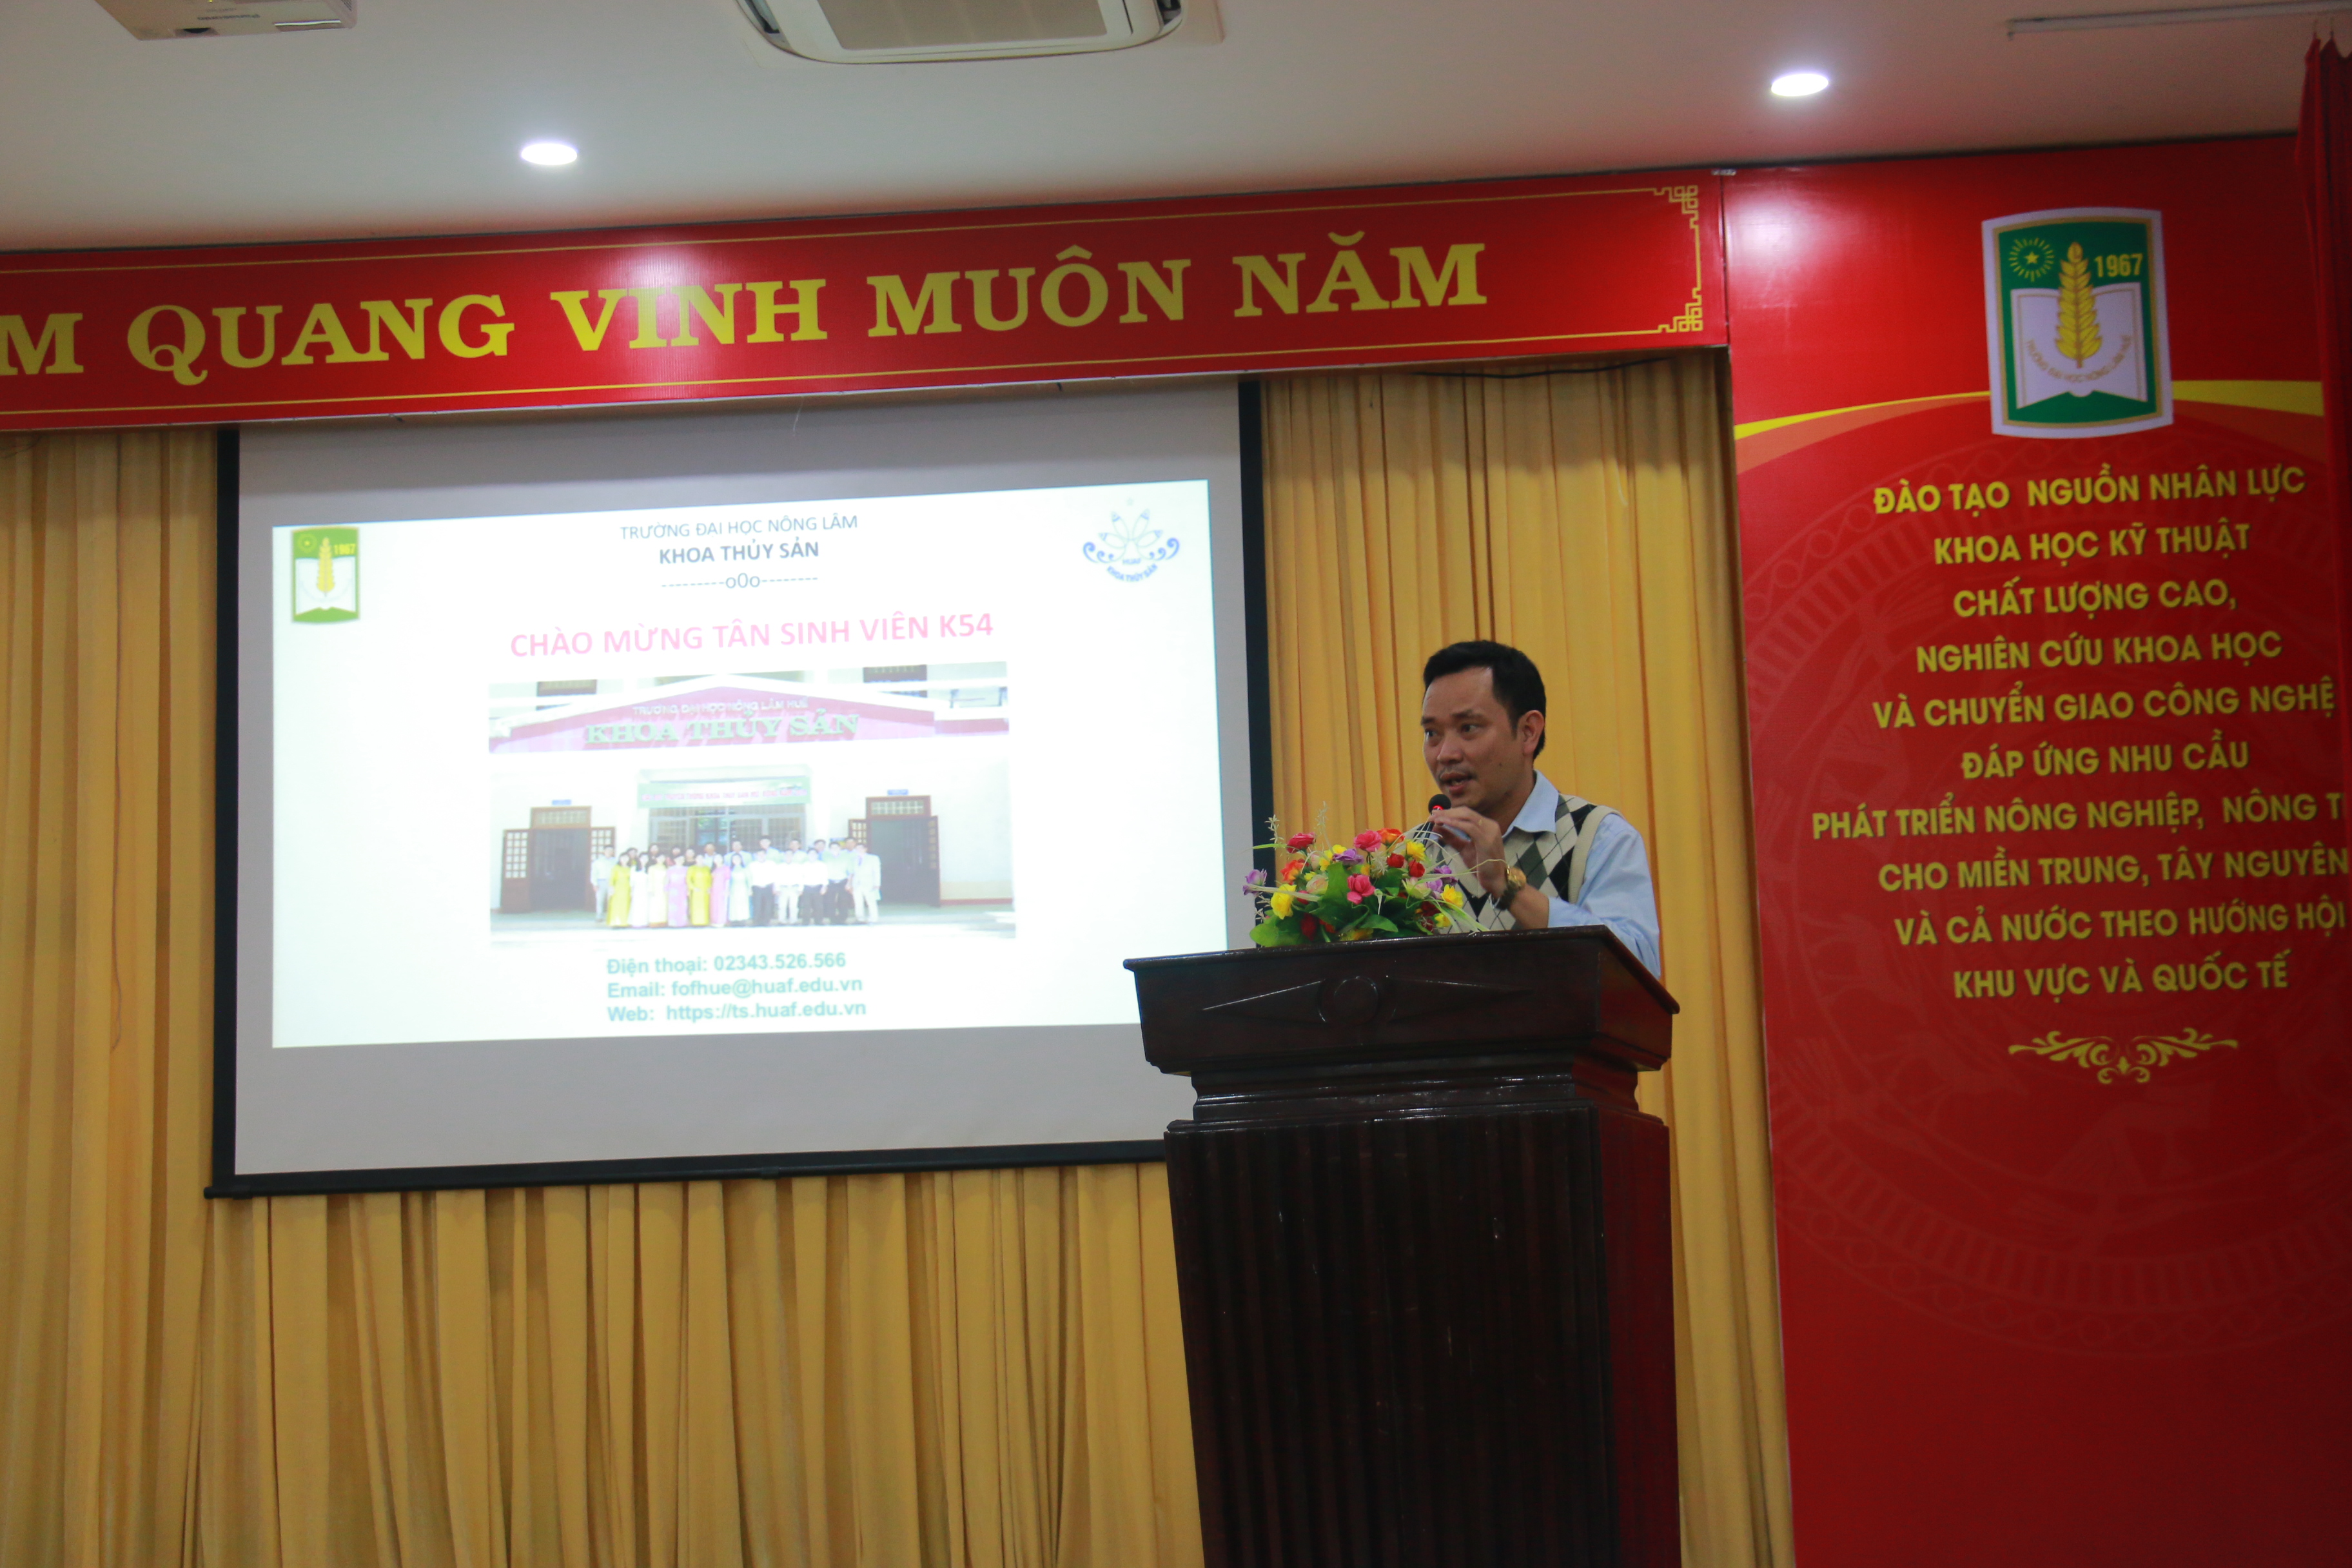 TS. Mạc Như Bình, Phó trưởng khoa giới thiệu về chương trình đào tạo